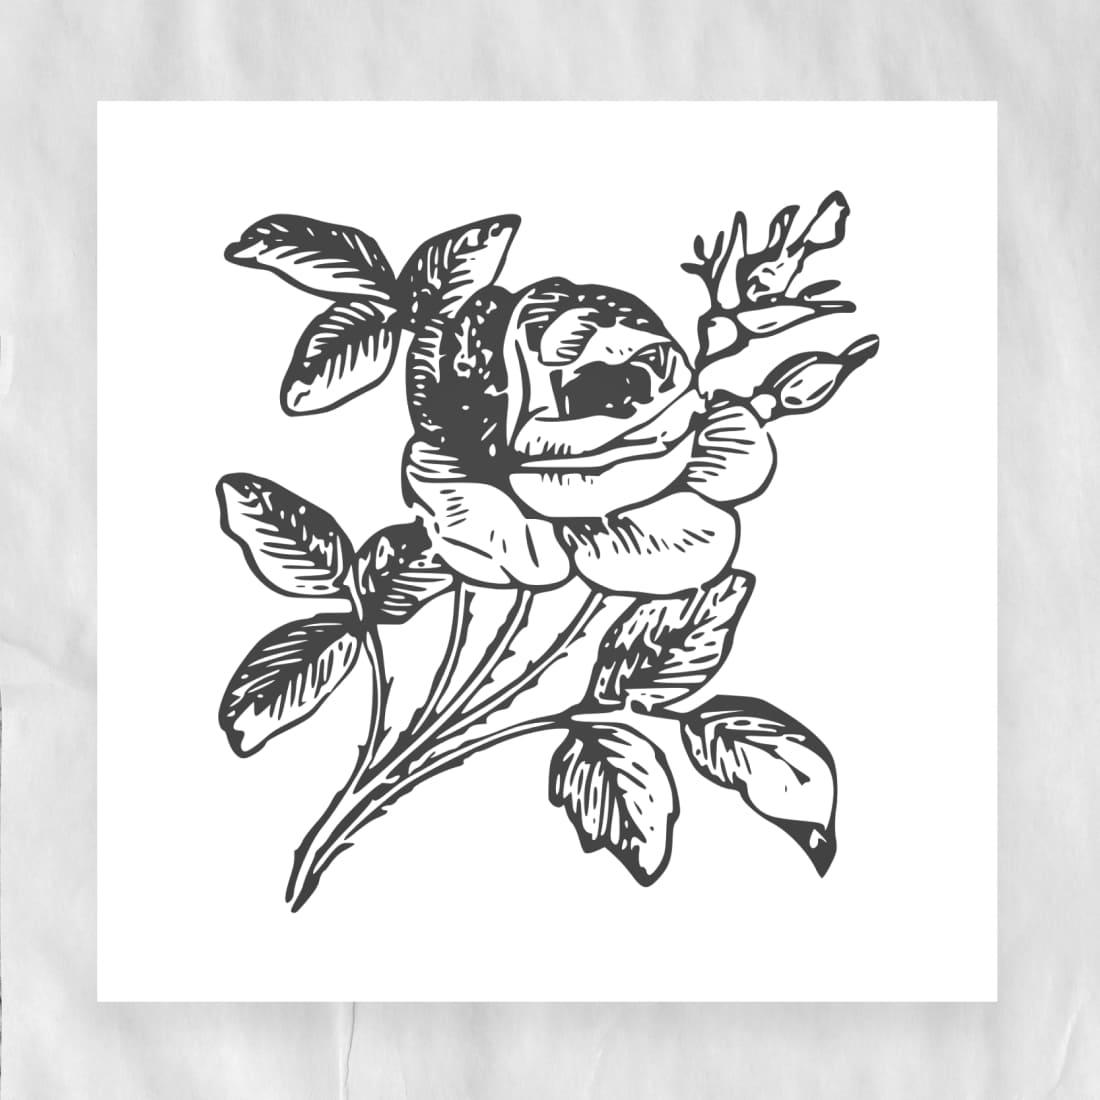 Rose Flower SVG – MasterBundles